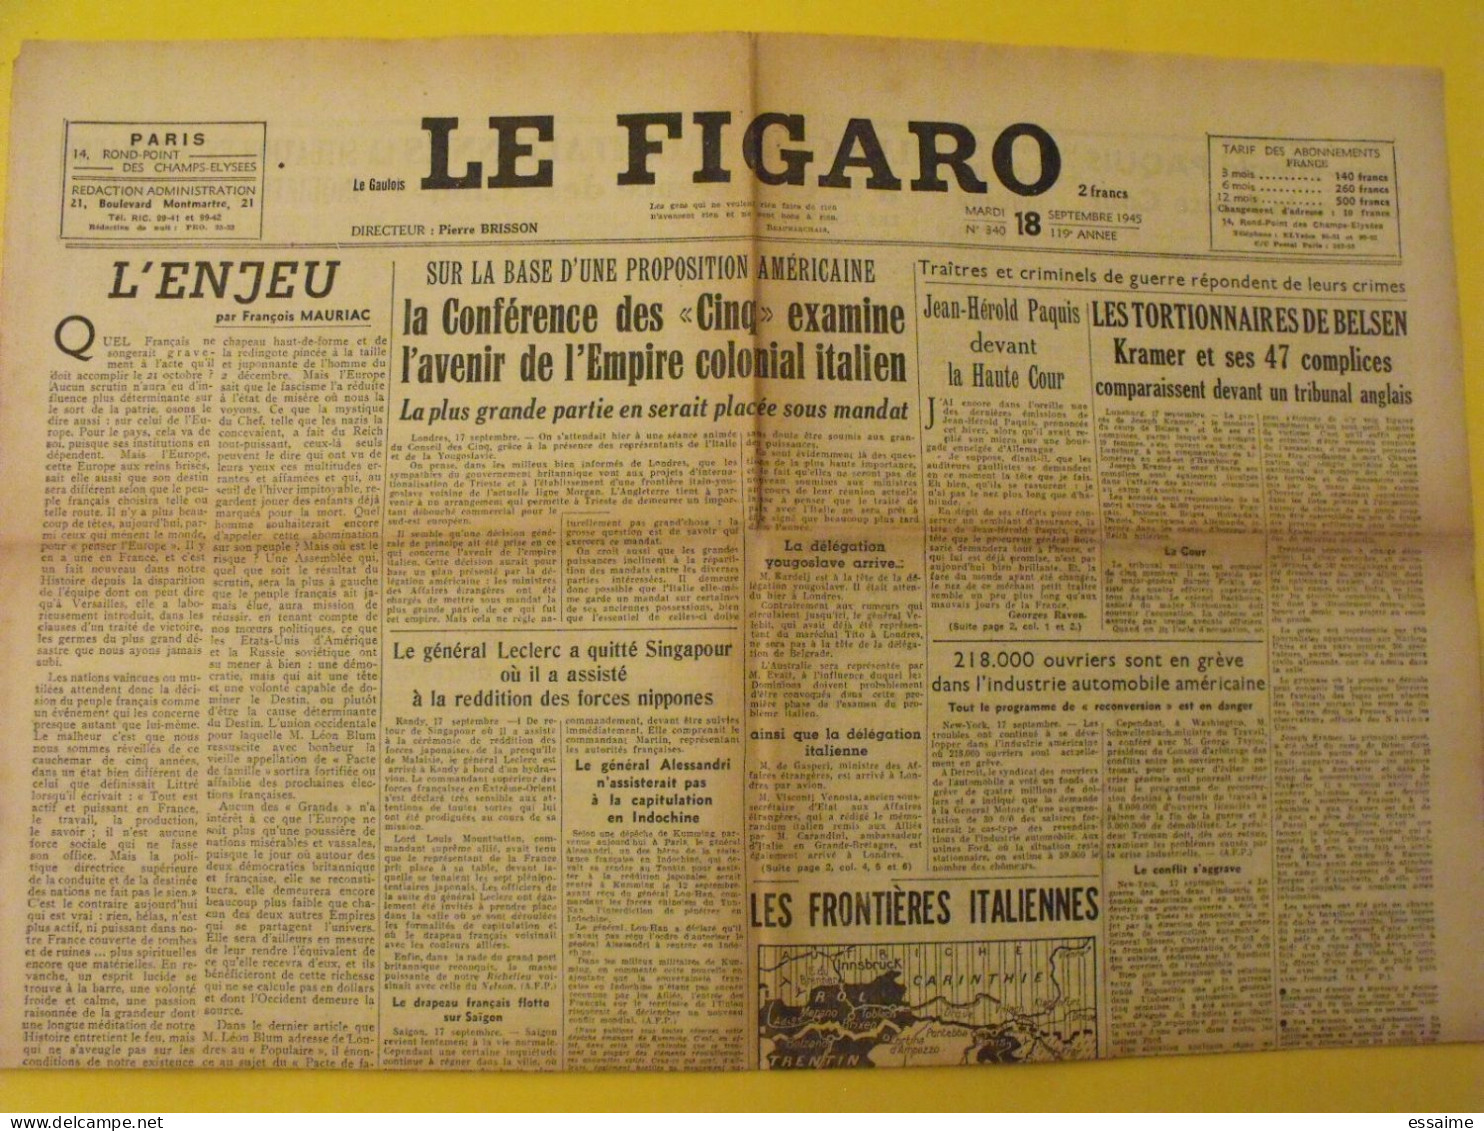 6 n° Le Figaro de 1945. Japon Tojo De Gaulle saïgon Espagne Konoye yougoslavie paquis épuration leclerc belsen indochine